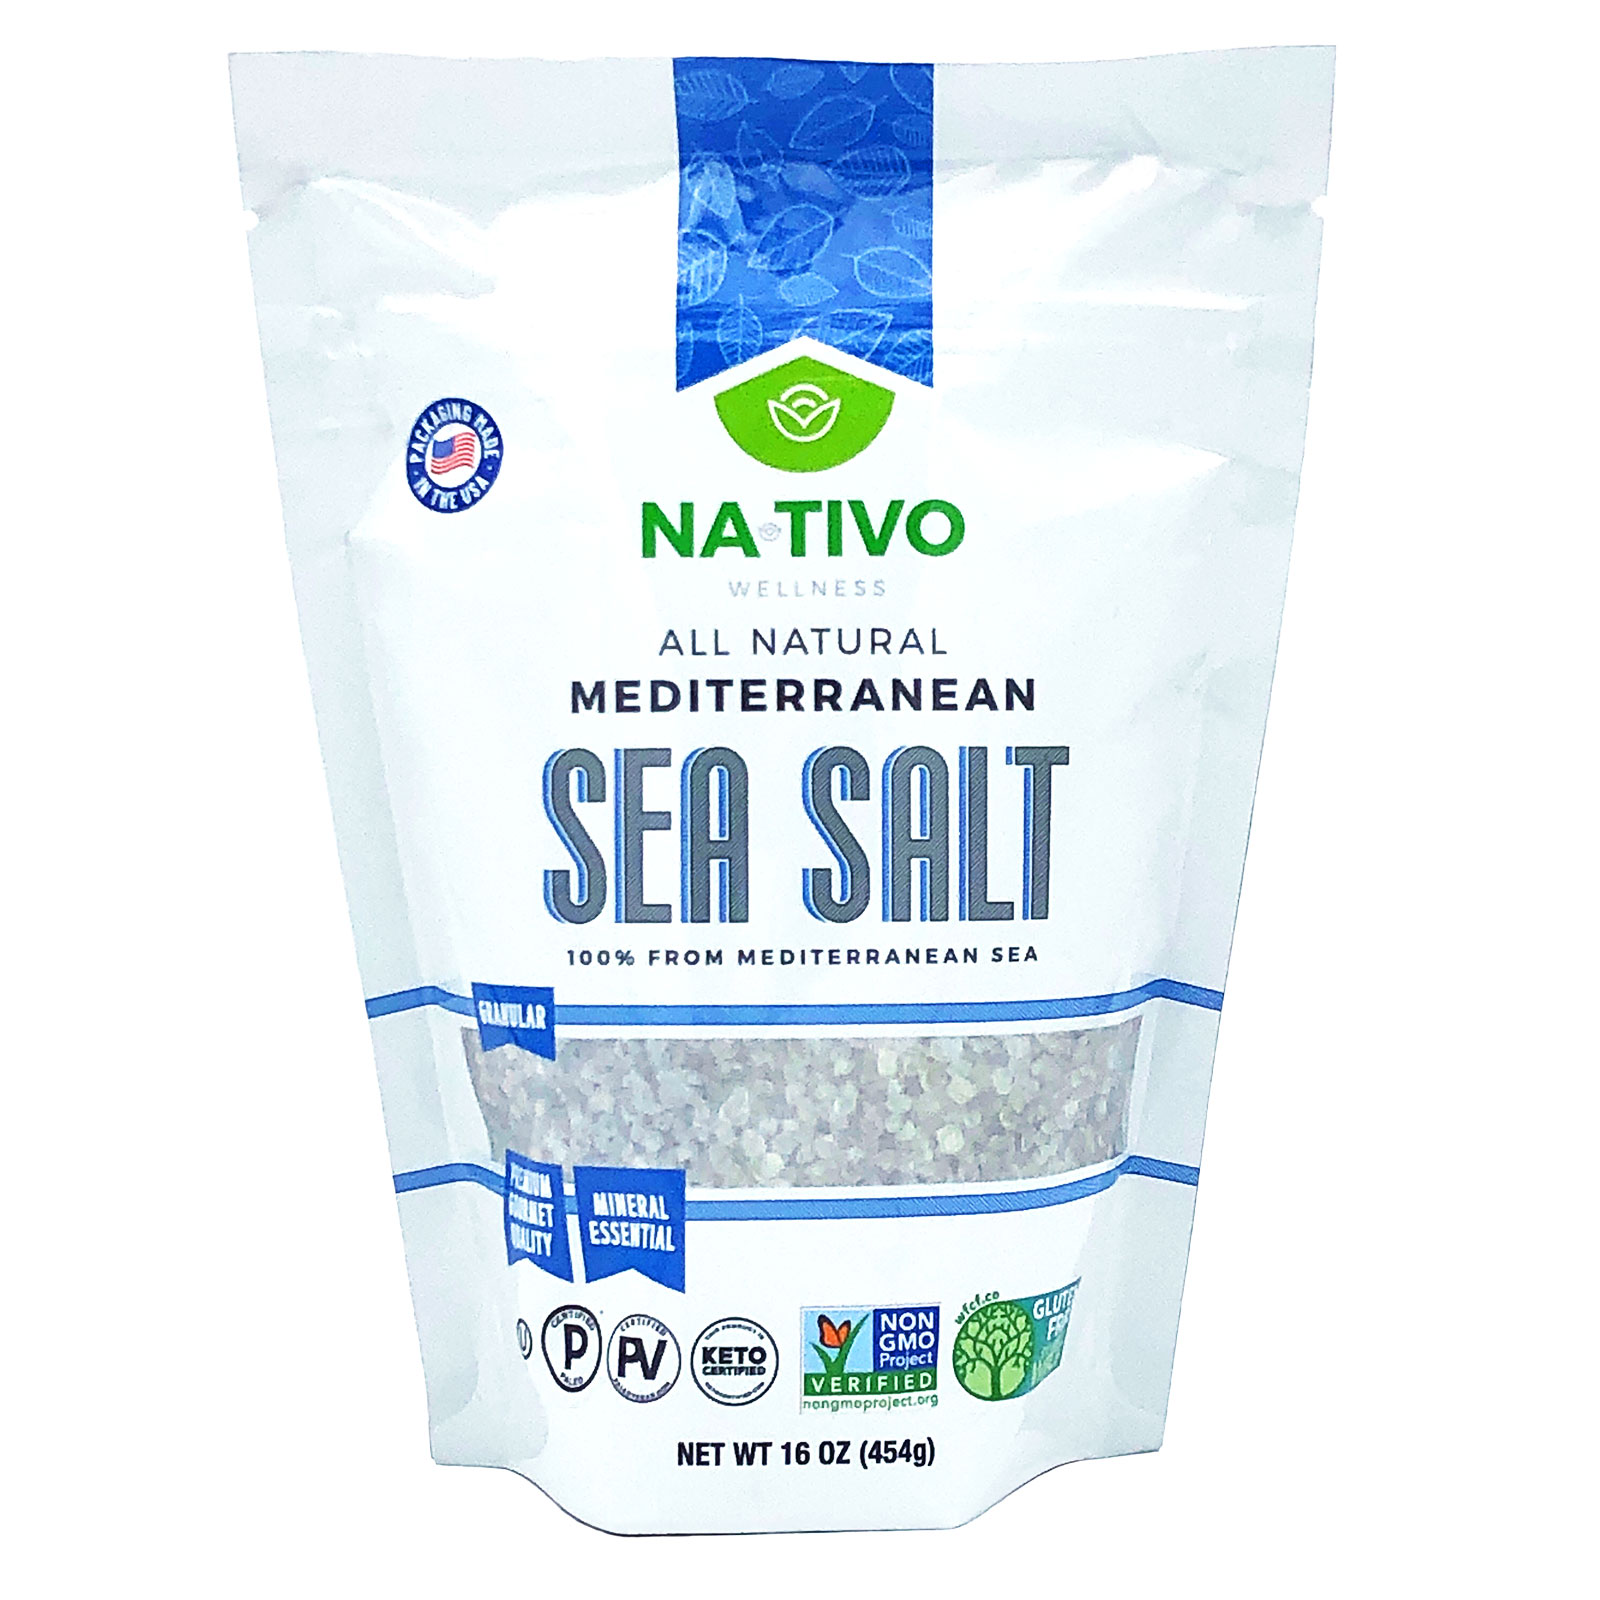 NaTivo All Natural Mediterranean Sea Salt 12 units per case 1.0 lb